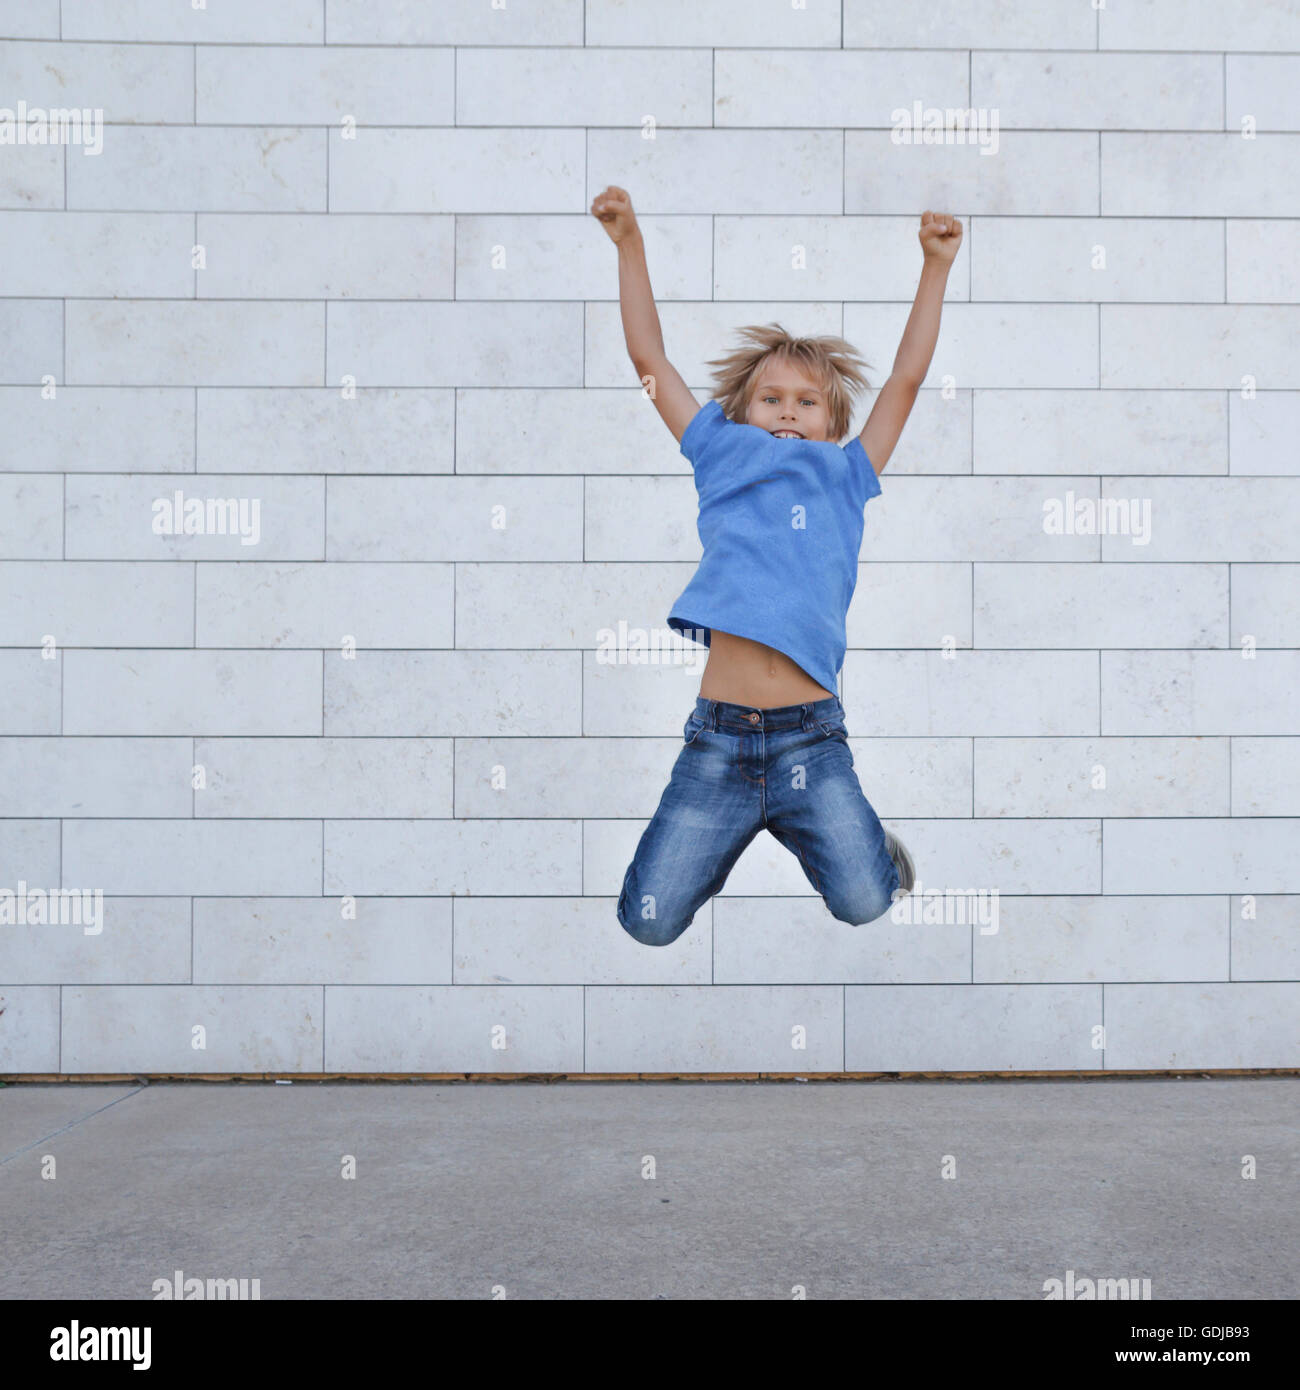 Happy little boy jumping in città. Persone, infanzia, la felicità, la libertà, la nozione di movimento Foto Stock